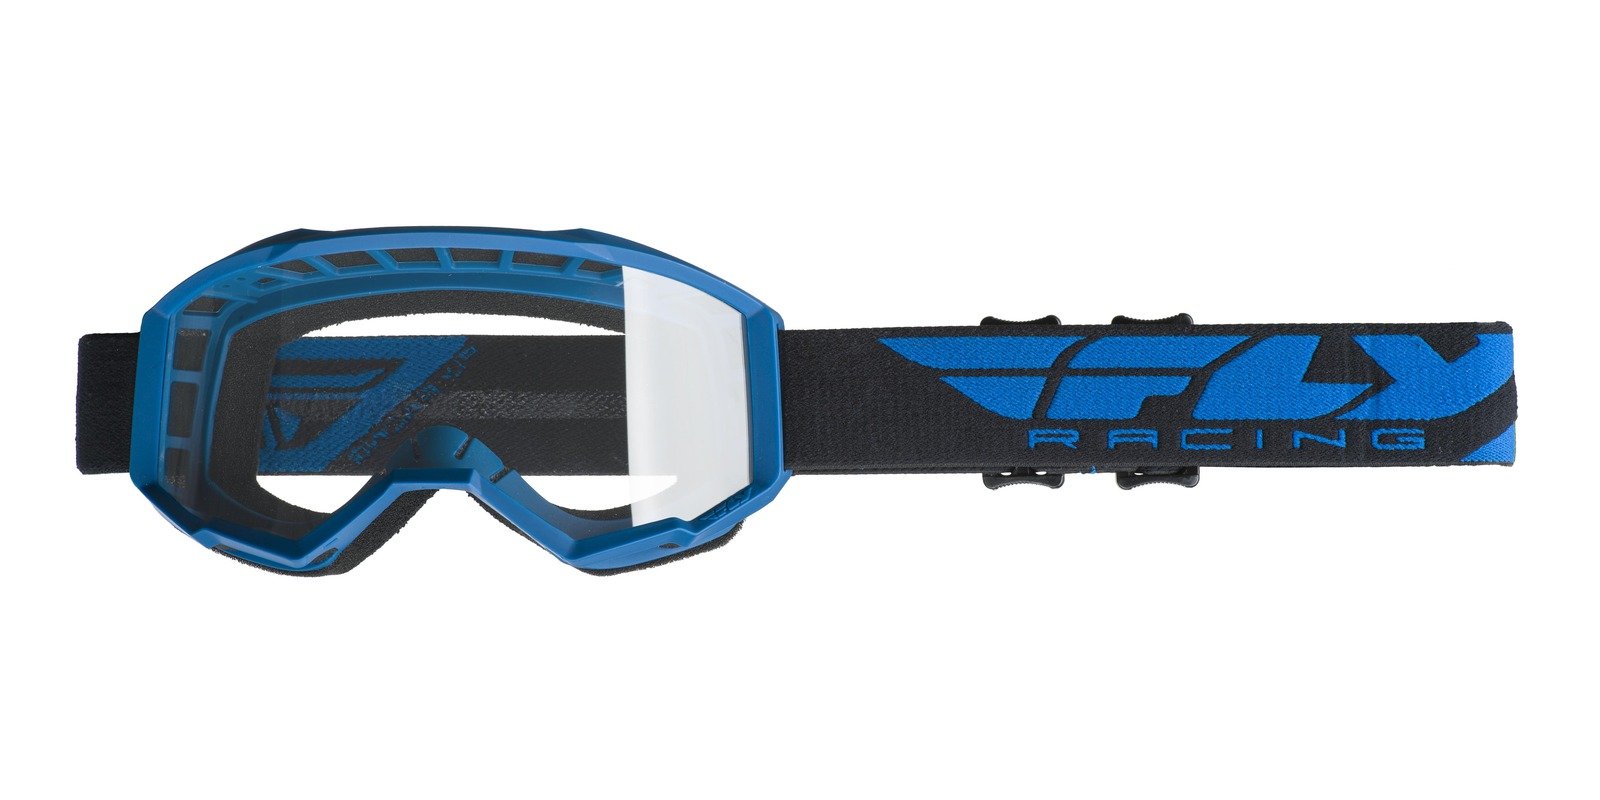 Obrázek produktu brýle FOCUS, FLY RACING - USA (modrá, čiré plexi bez pinů) 37-5101